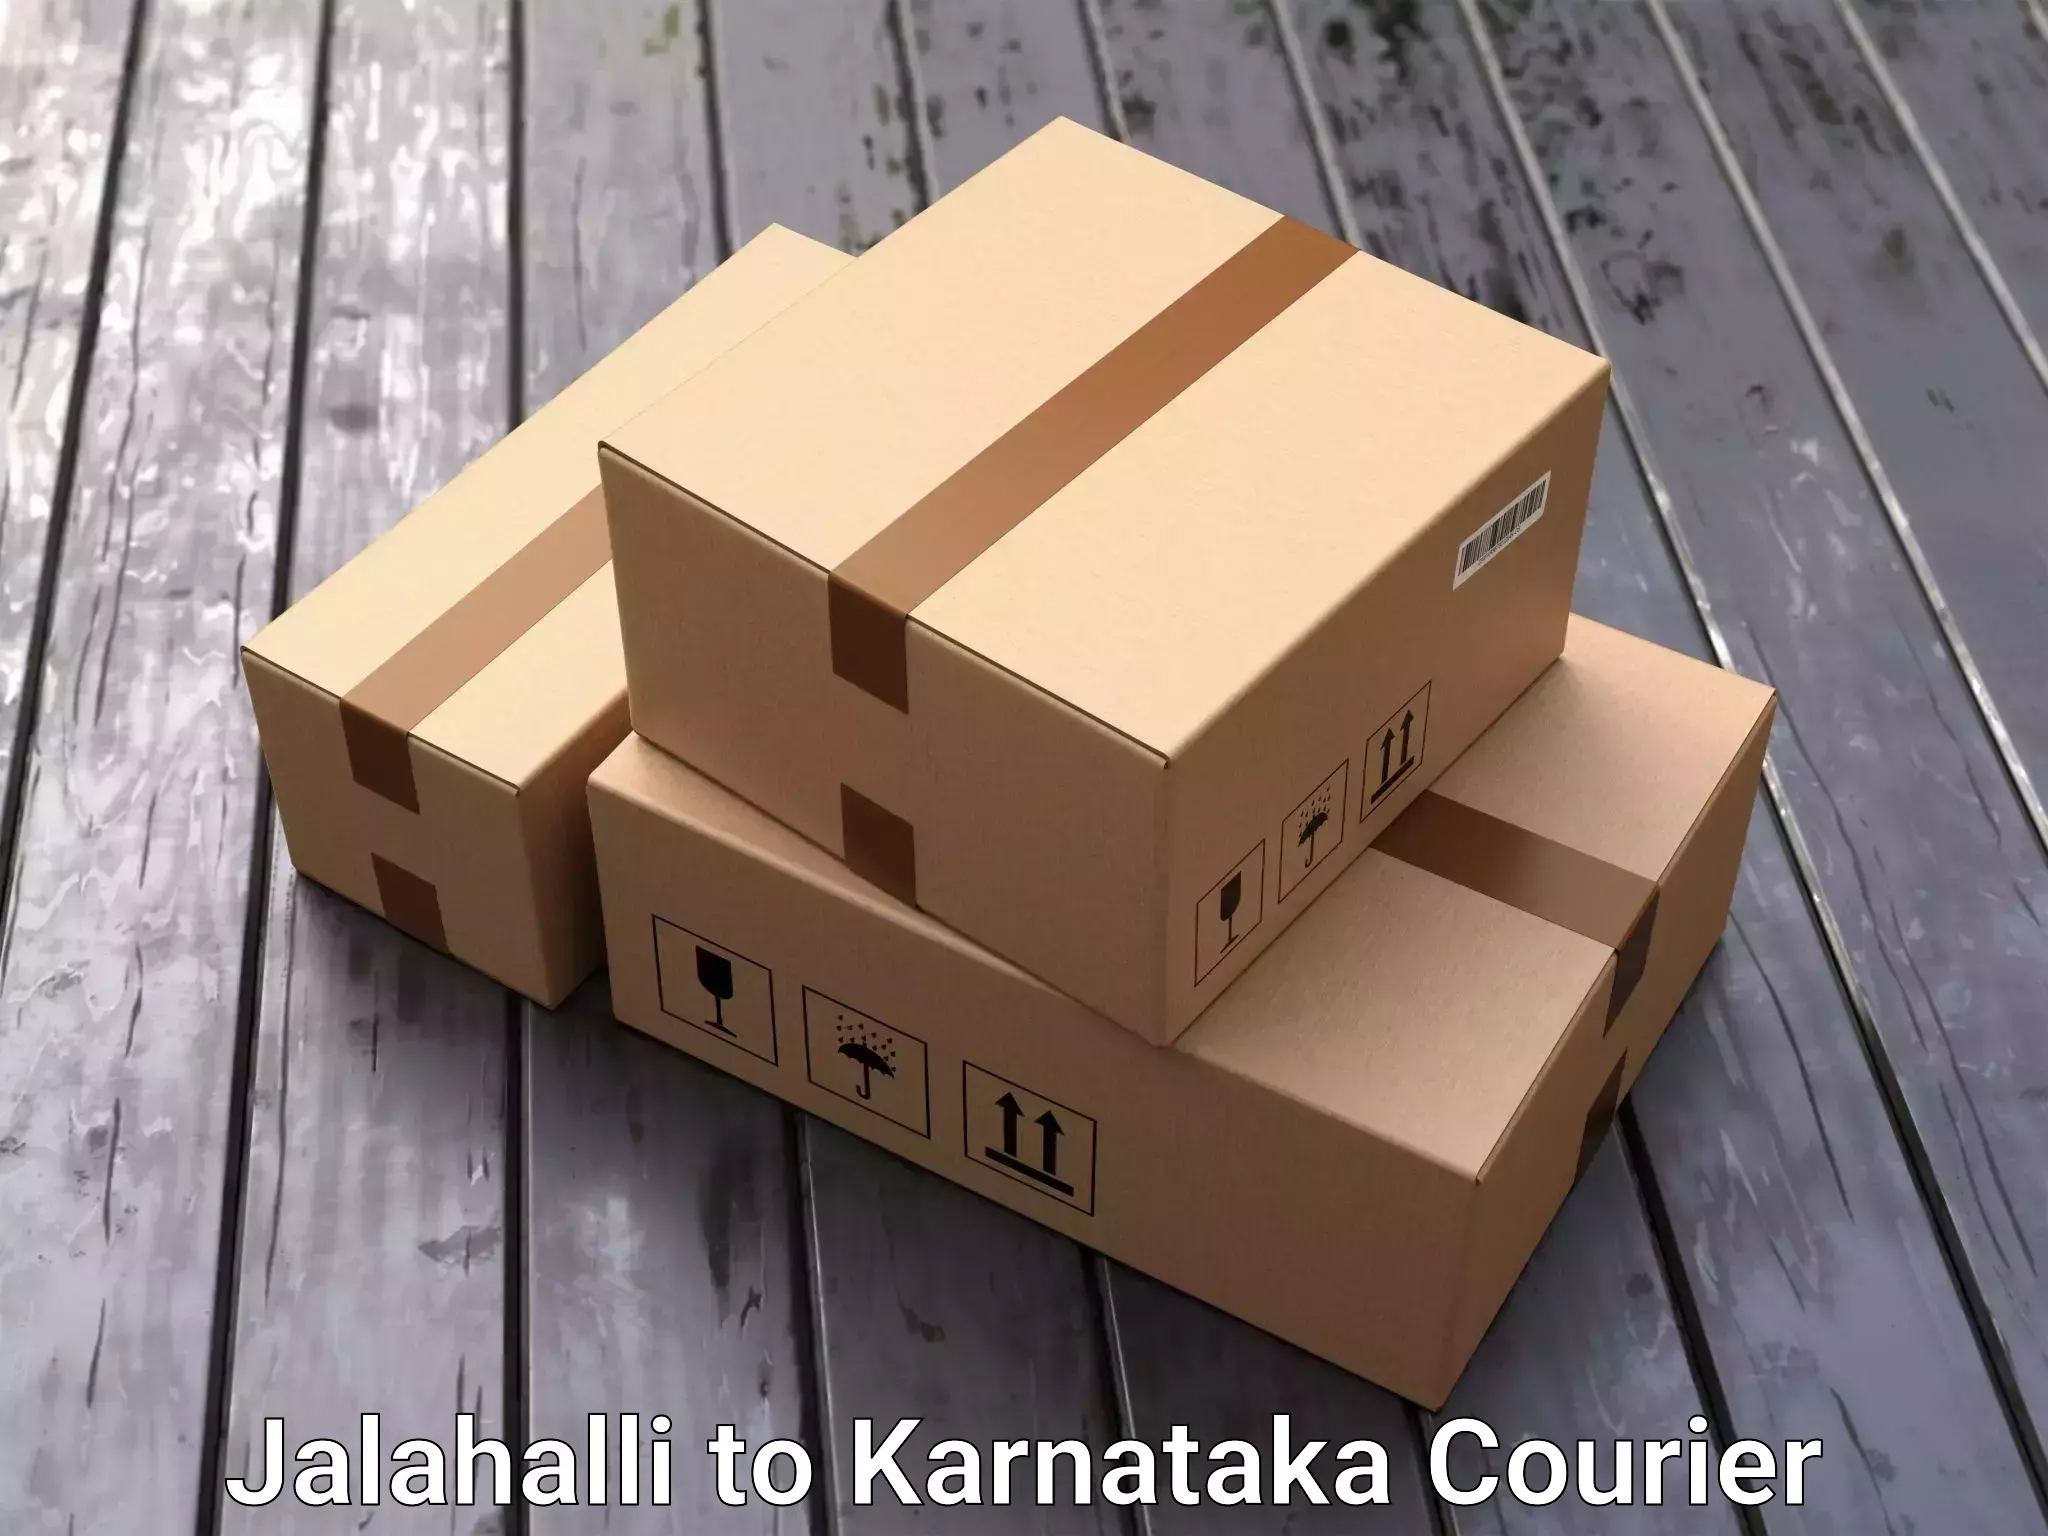 Door-to-door relocation services Jalahalli to Karnataka